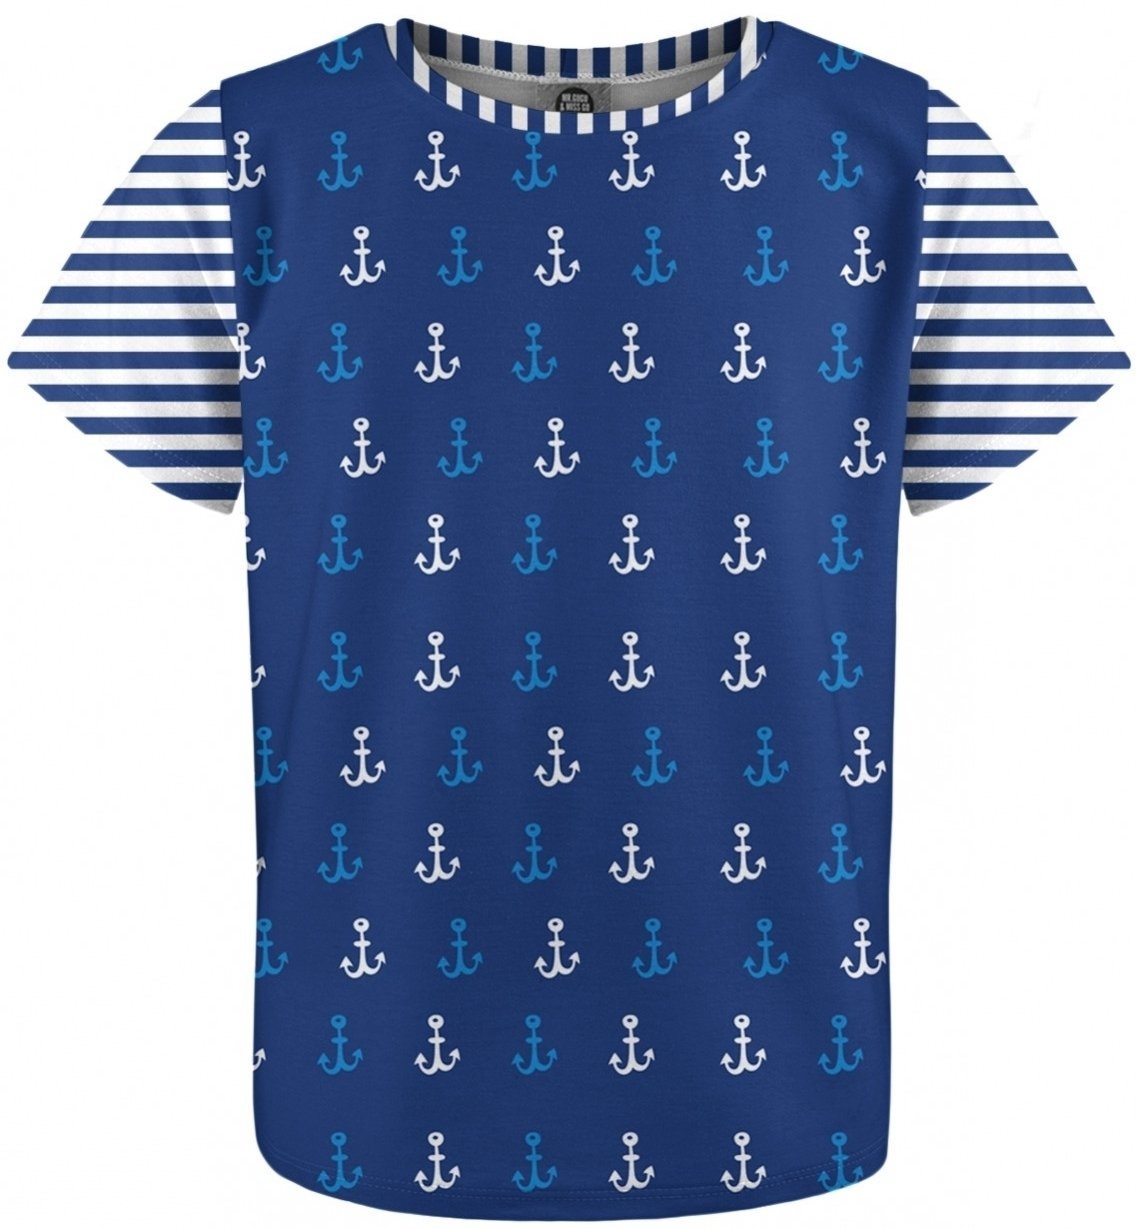 Sejlertøj til børn Mr. Gugu and Miss Go Ocean Pattern Kids T-Shirt Fullprint 4 - 6 Y